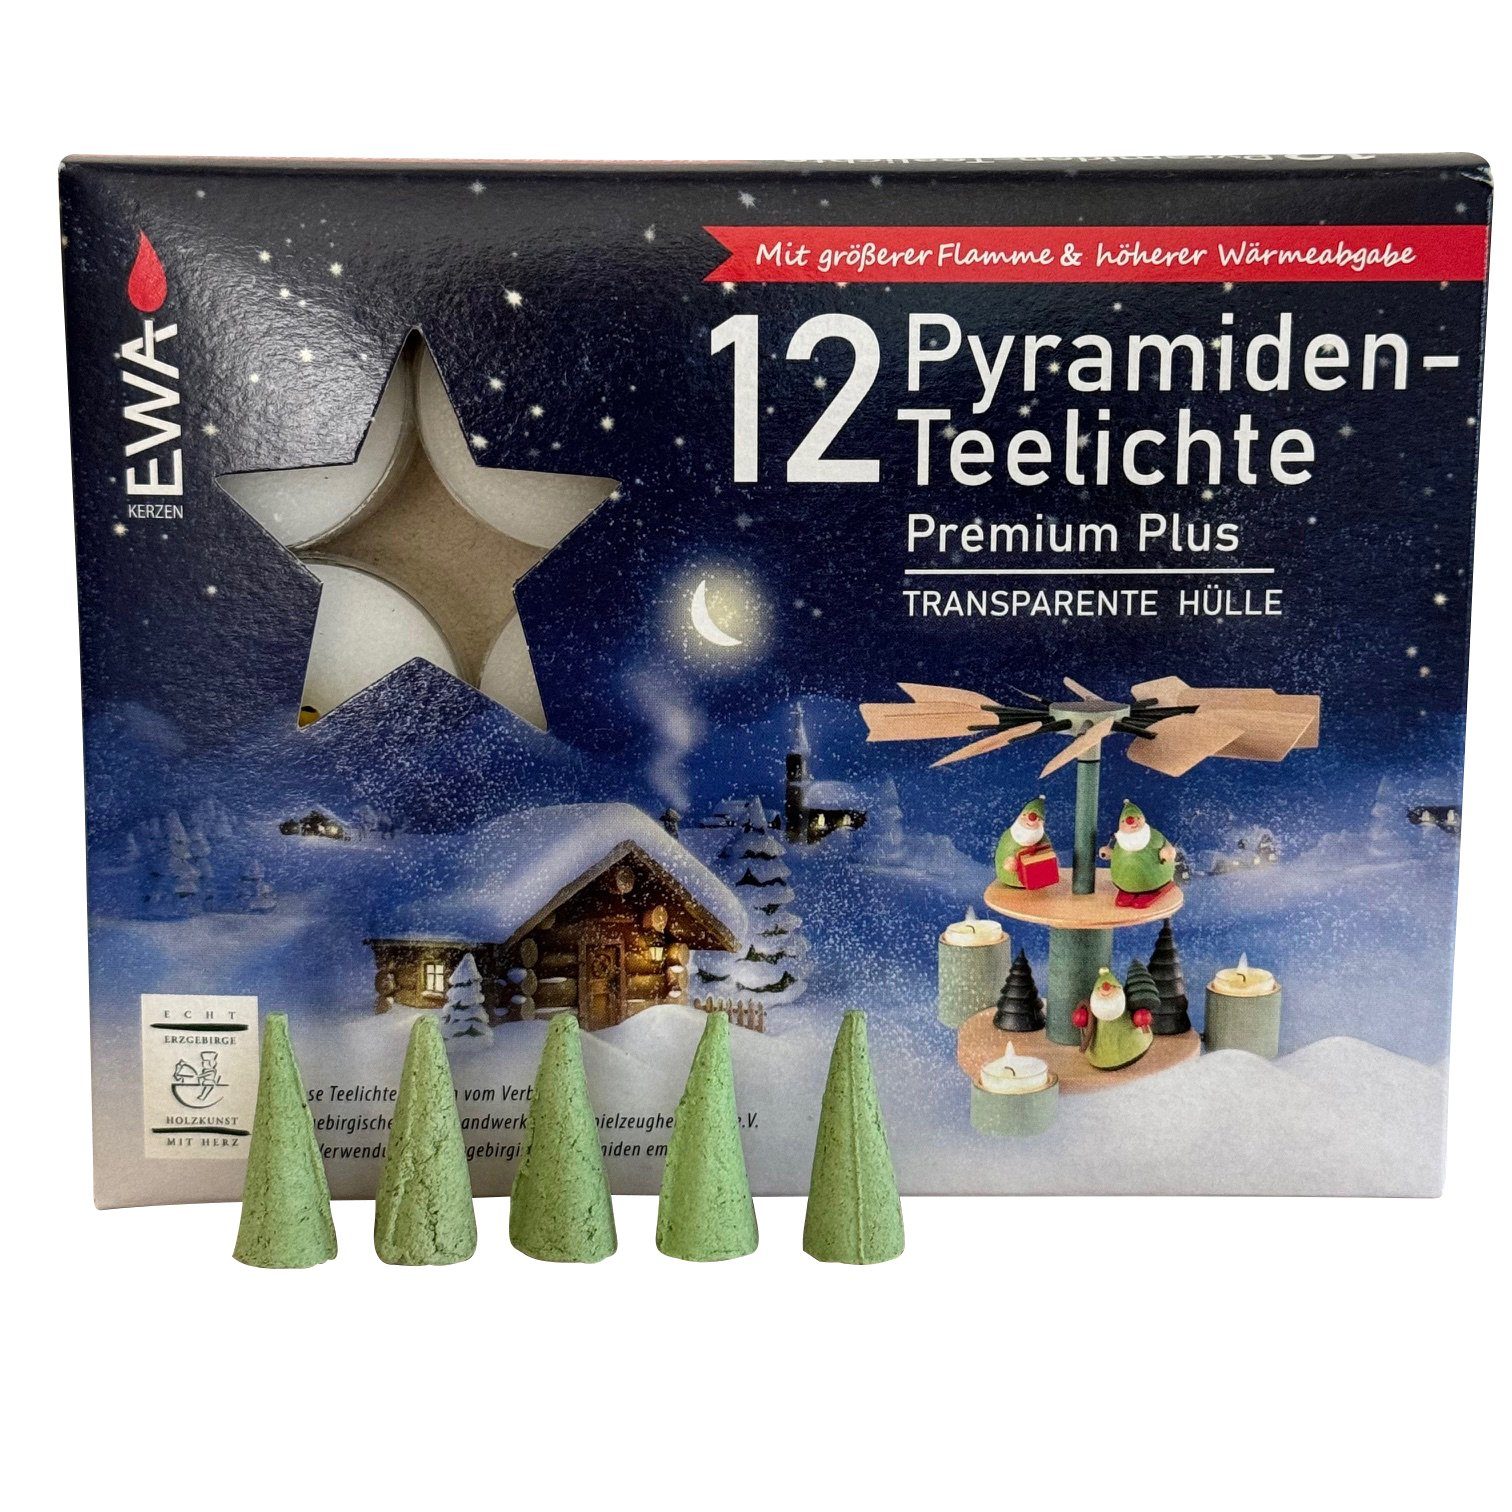 SAICO Original Weihnachtspyramide Tischpyramide aus Weihnachtsmann, für mit Räucherhaus, aus dem Erzgebirge Skihütte - Holz Weihnachtsdeko Räuchermännchen Teelichter